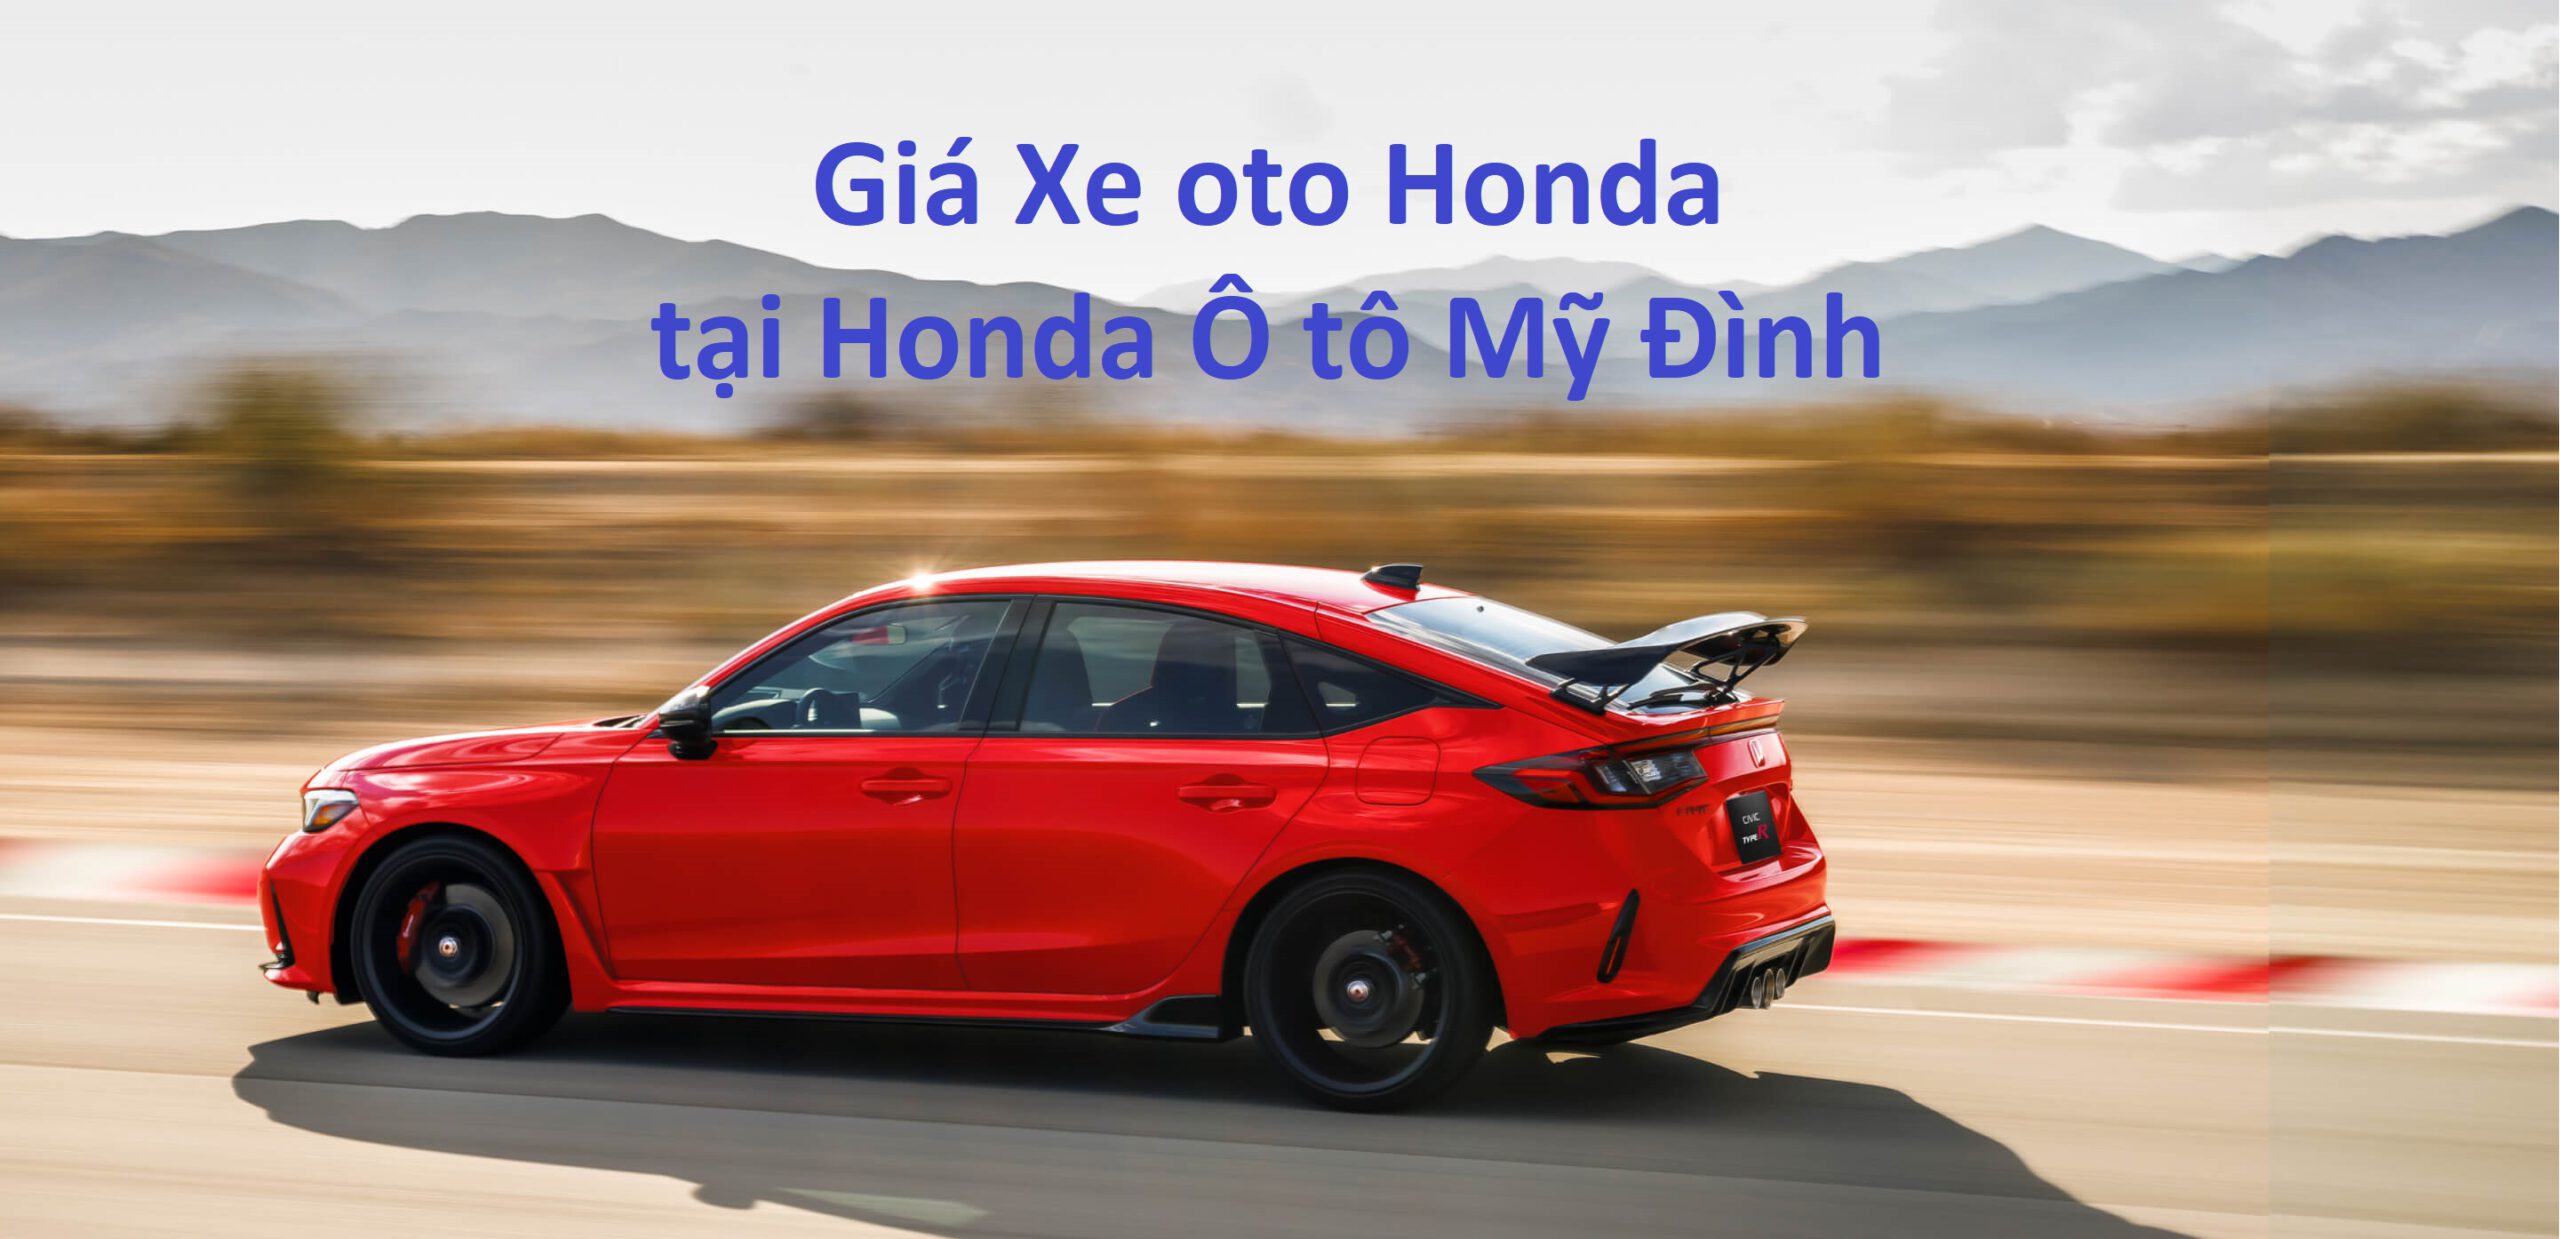 Giá xe Oto Honda mới nhất tại Honda Ô tô Mỹ Đình Honda Oto Mỹ Đình